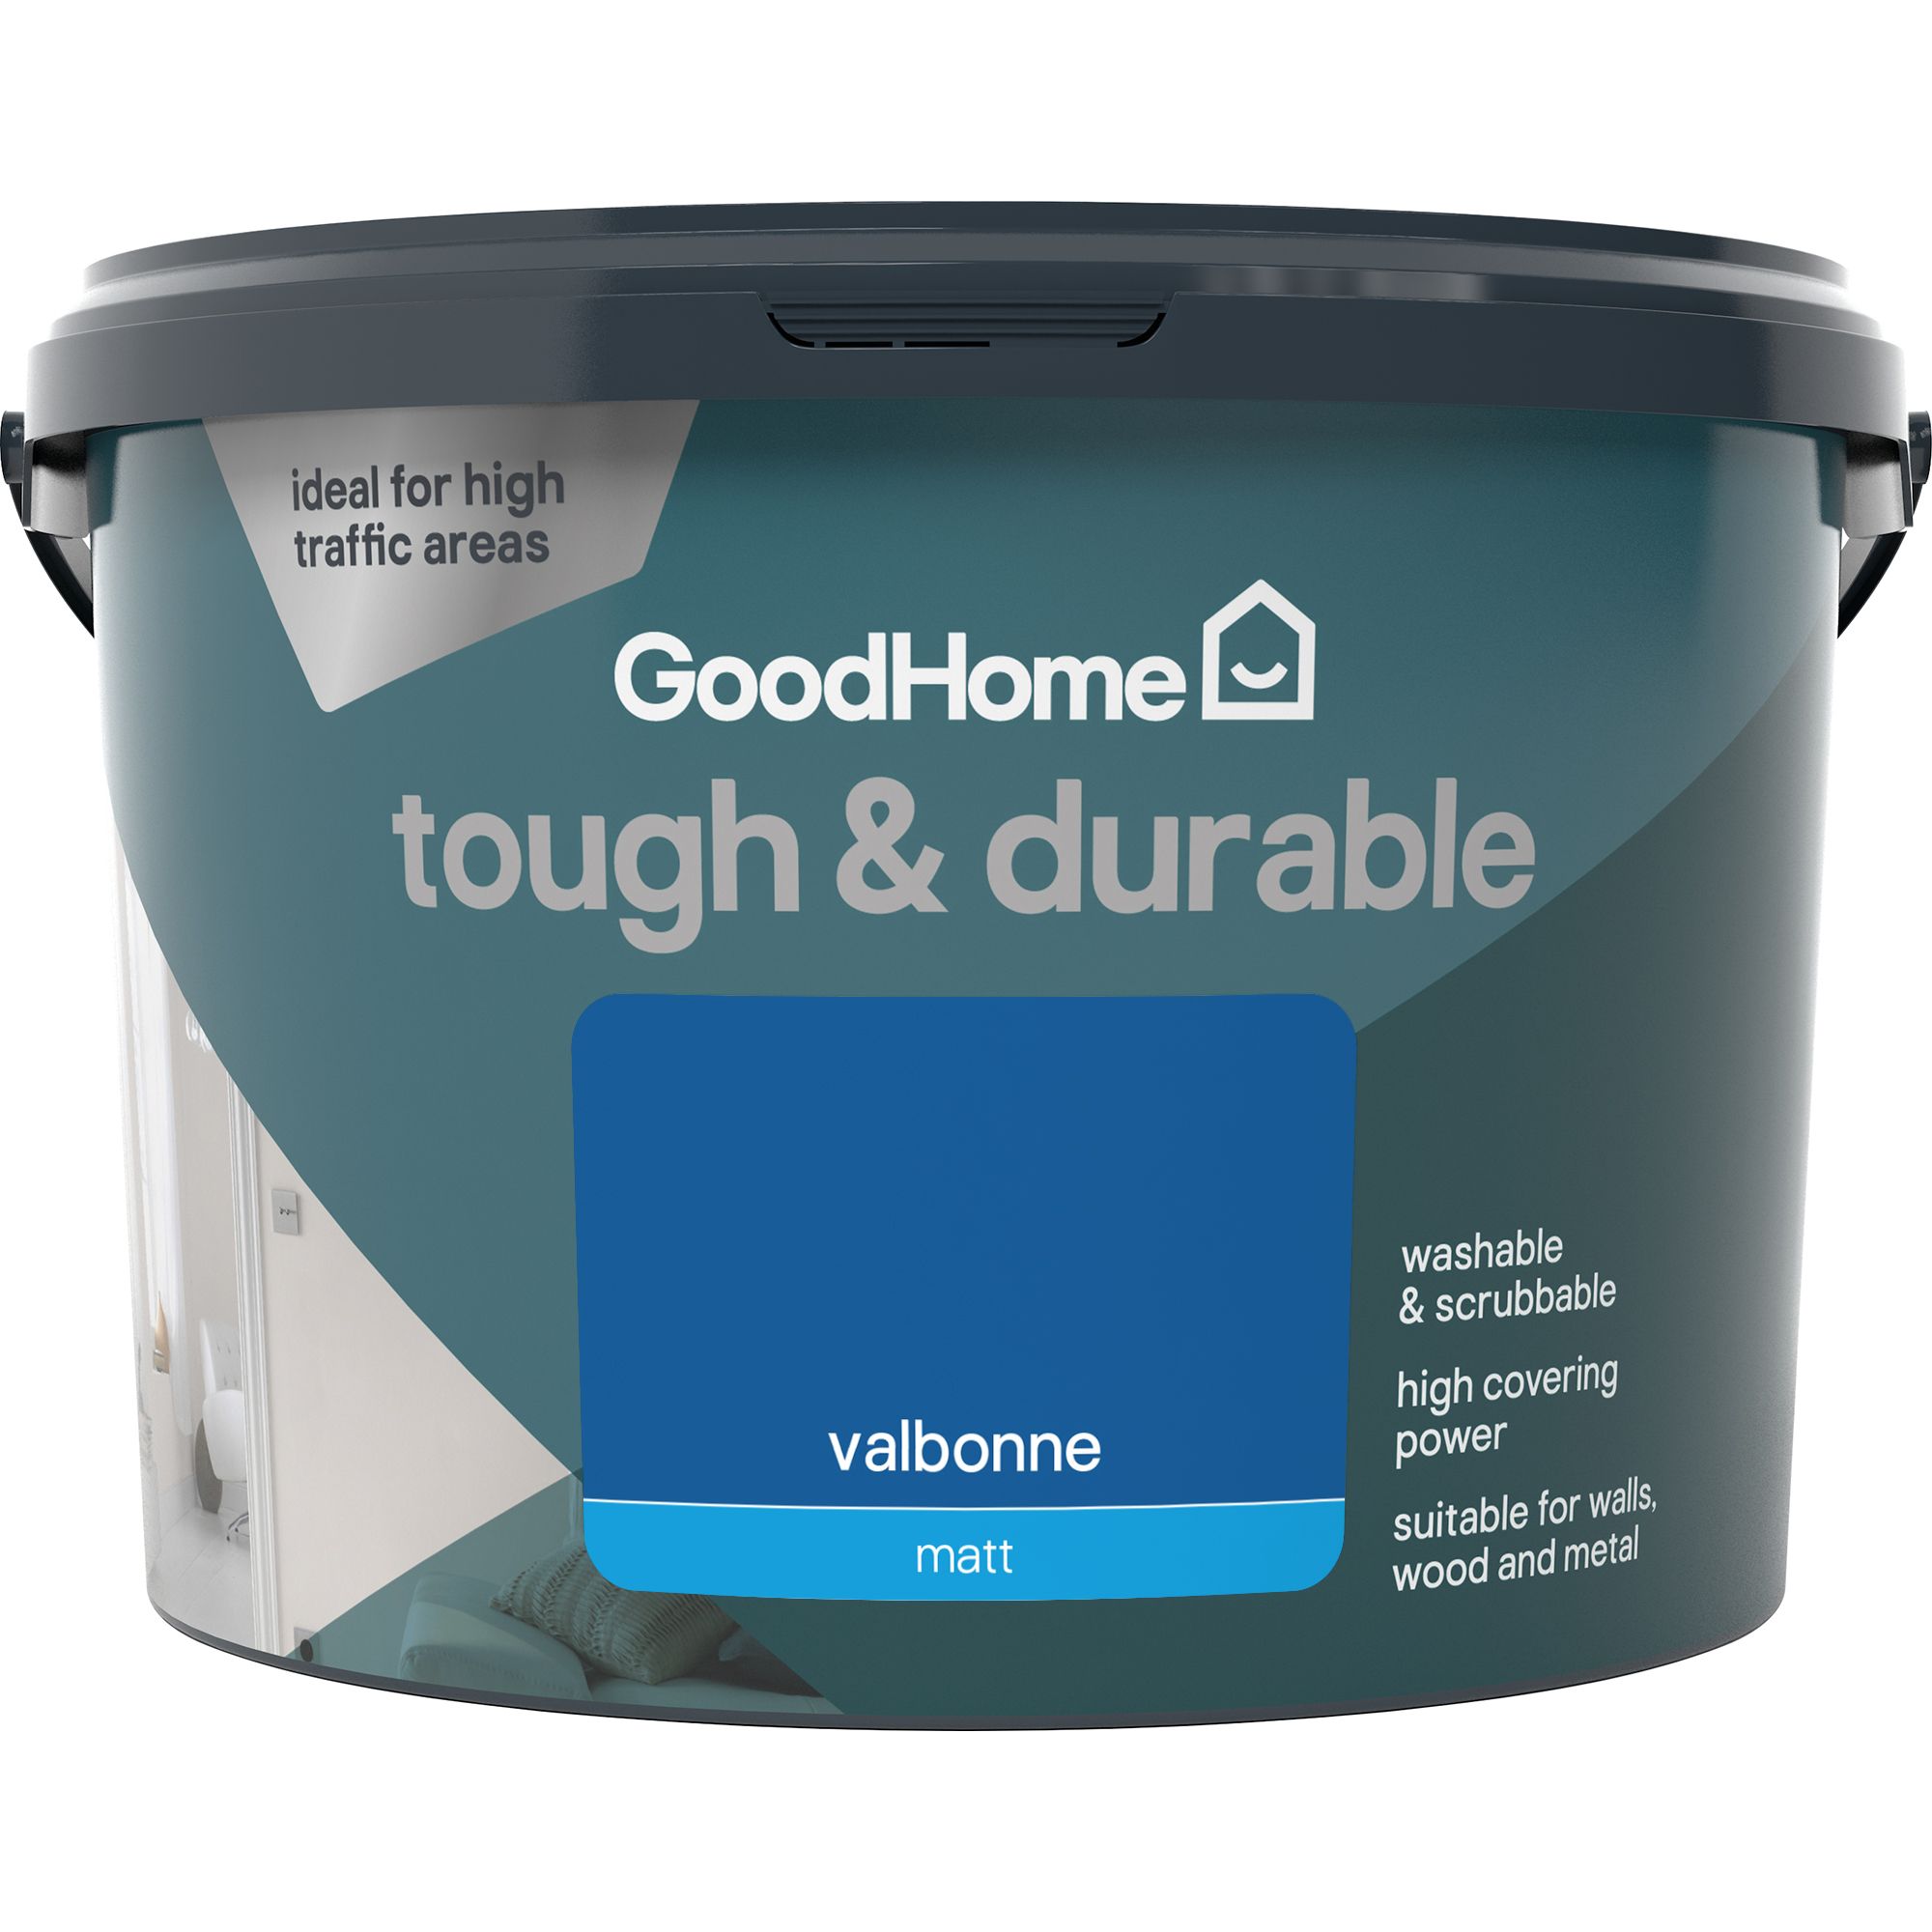 GoodHome Durable Valbonne Matt Emulsion paint, 2.5L